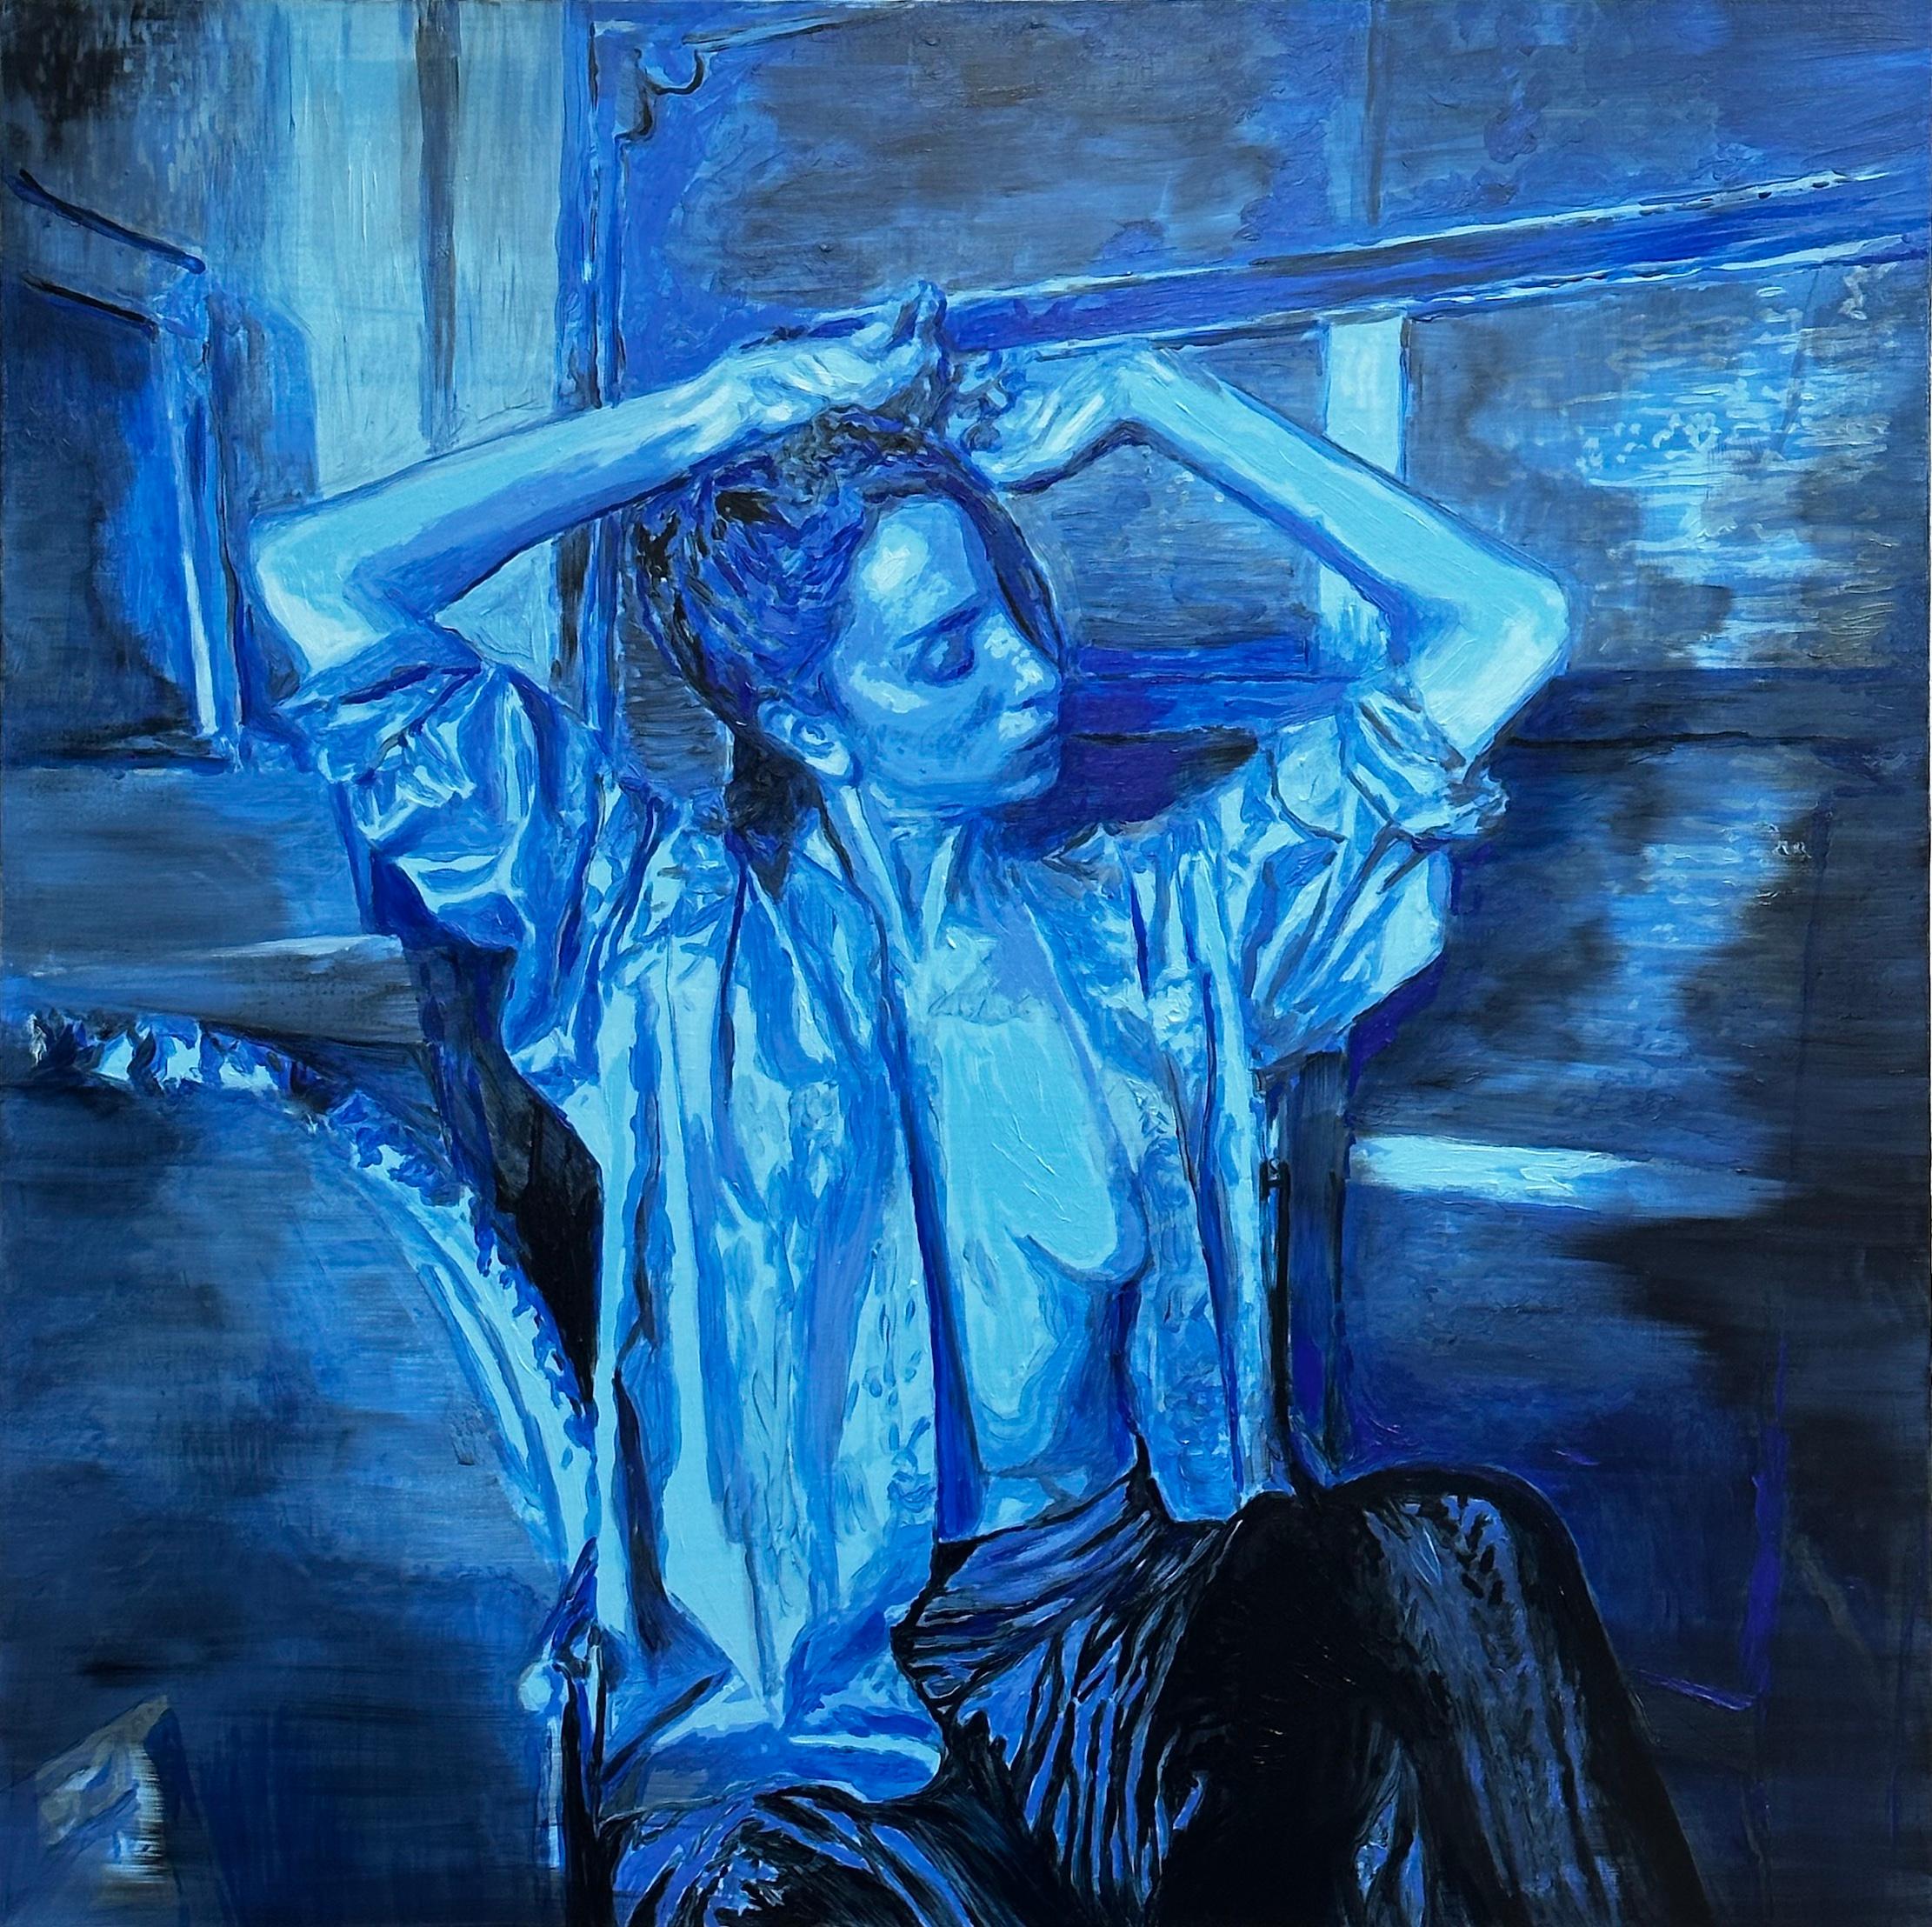 Figurative Painting Nicolás Guzmán - Sans titre - Femme, portrait nu, peinture à l'huile figurative, bleu et noir